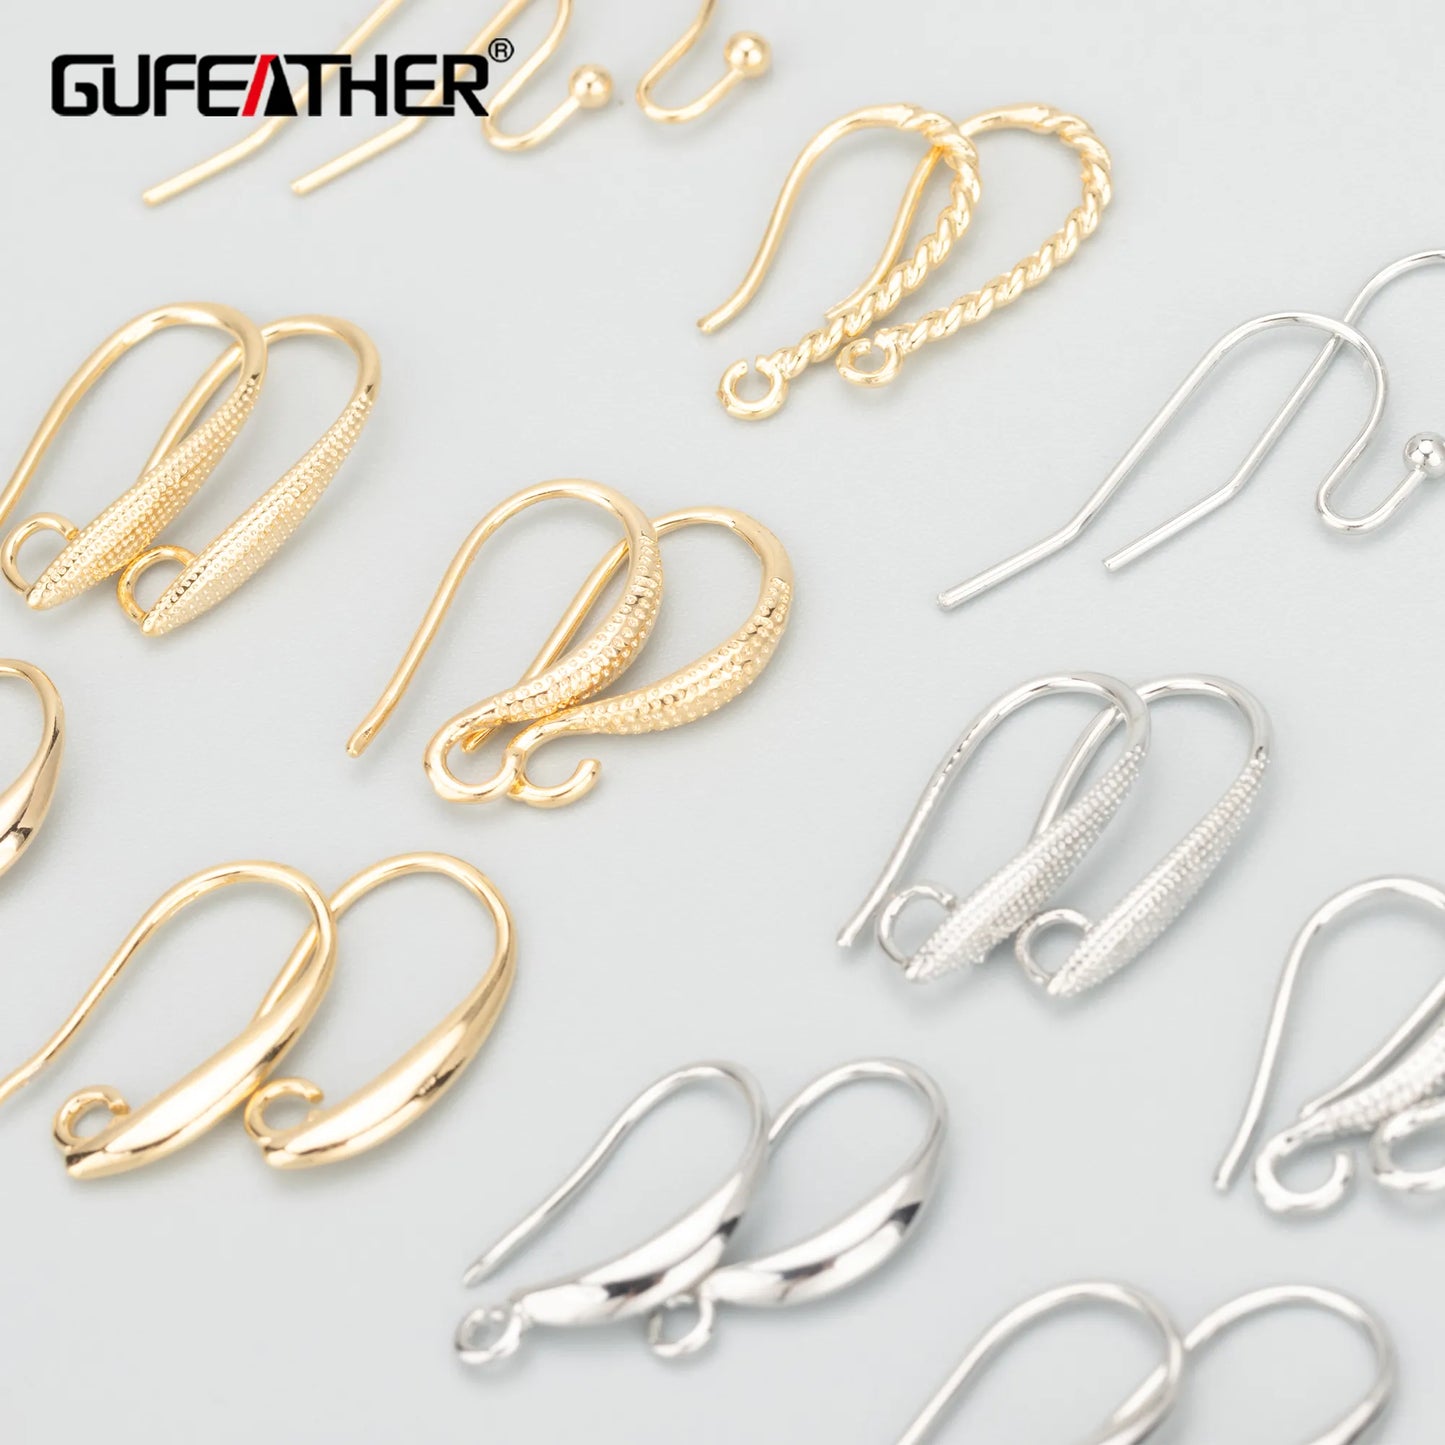 GUFEATHER MB65, accessoires de bijoux, crochets, sans nickel, plaqué rhodium or 18 carats, cuivre, breloques, boucles d'oreilles à faire soi-même, fabrication de bijoux, 50 pièces/lot 